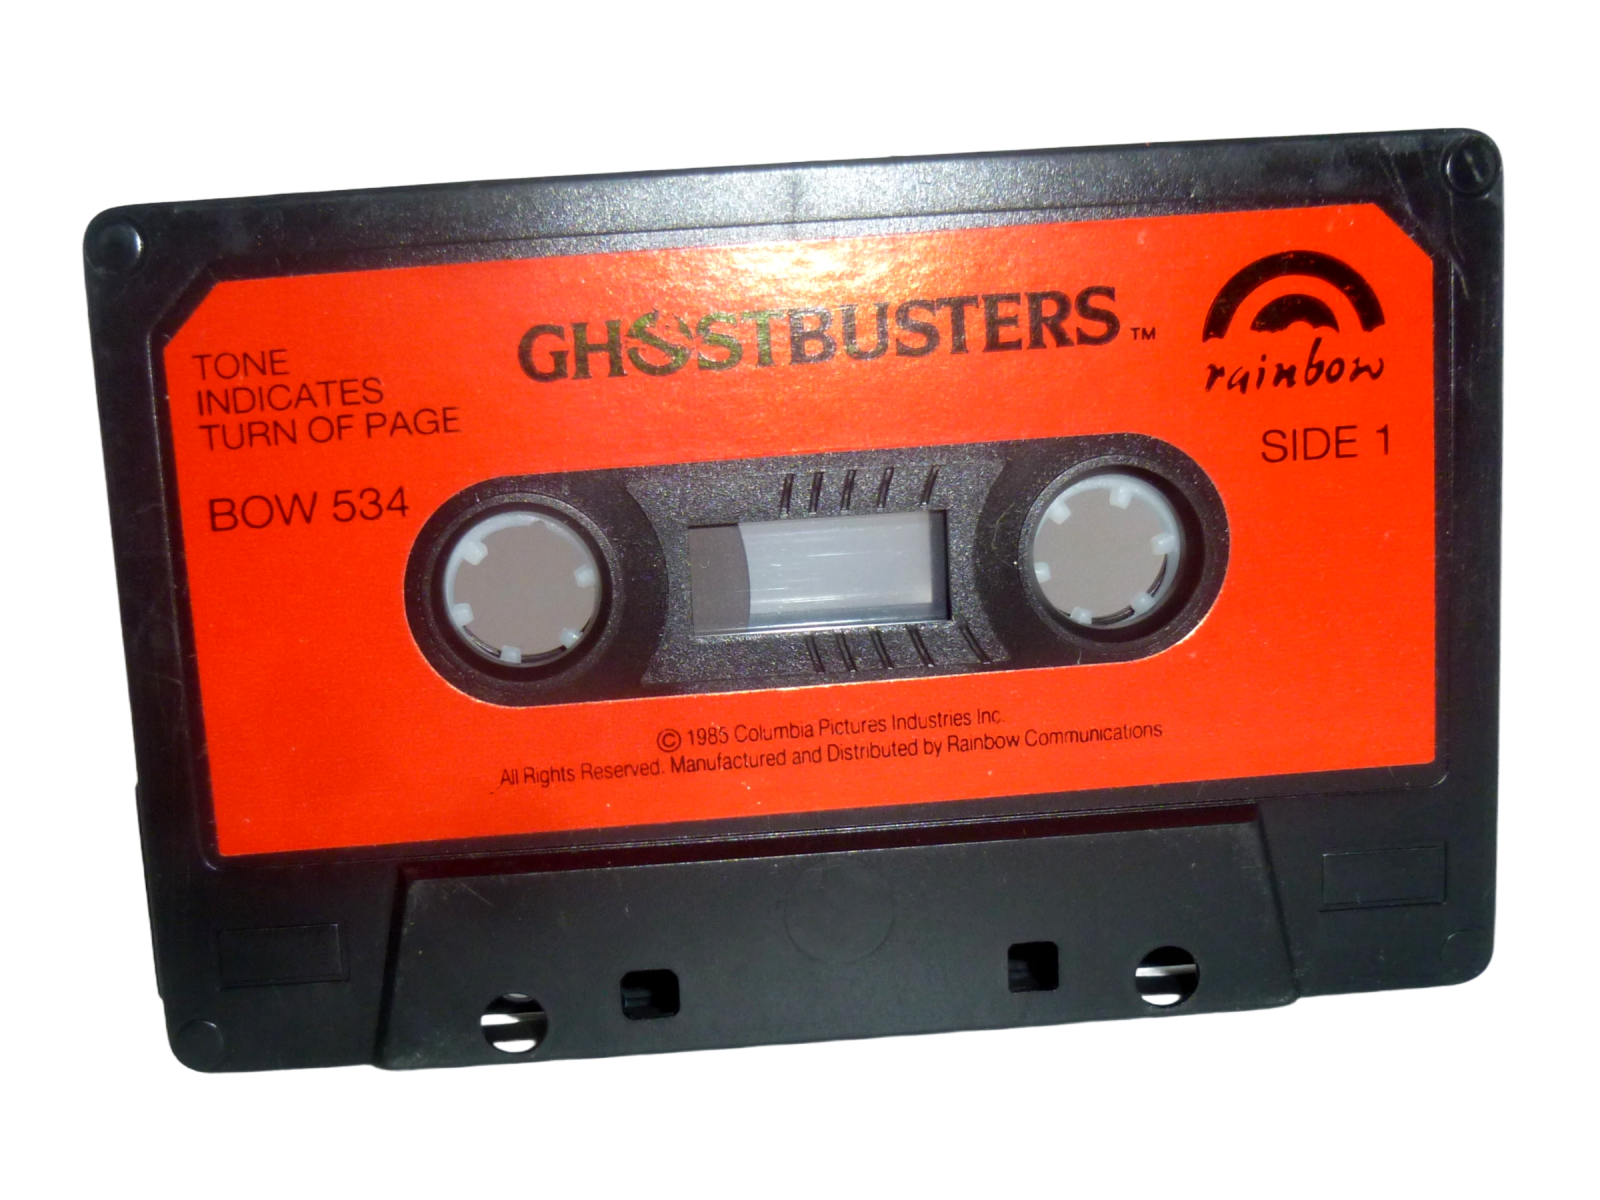 Ghostbusters englischsprachige Hörspiel-Kassette ohne Titel rainbow